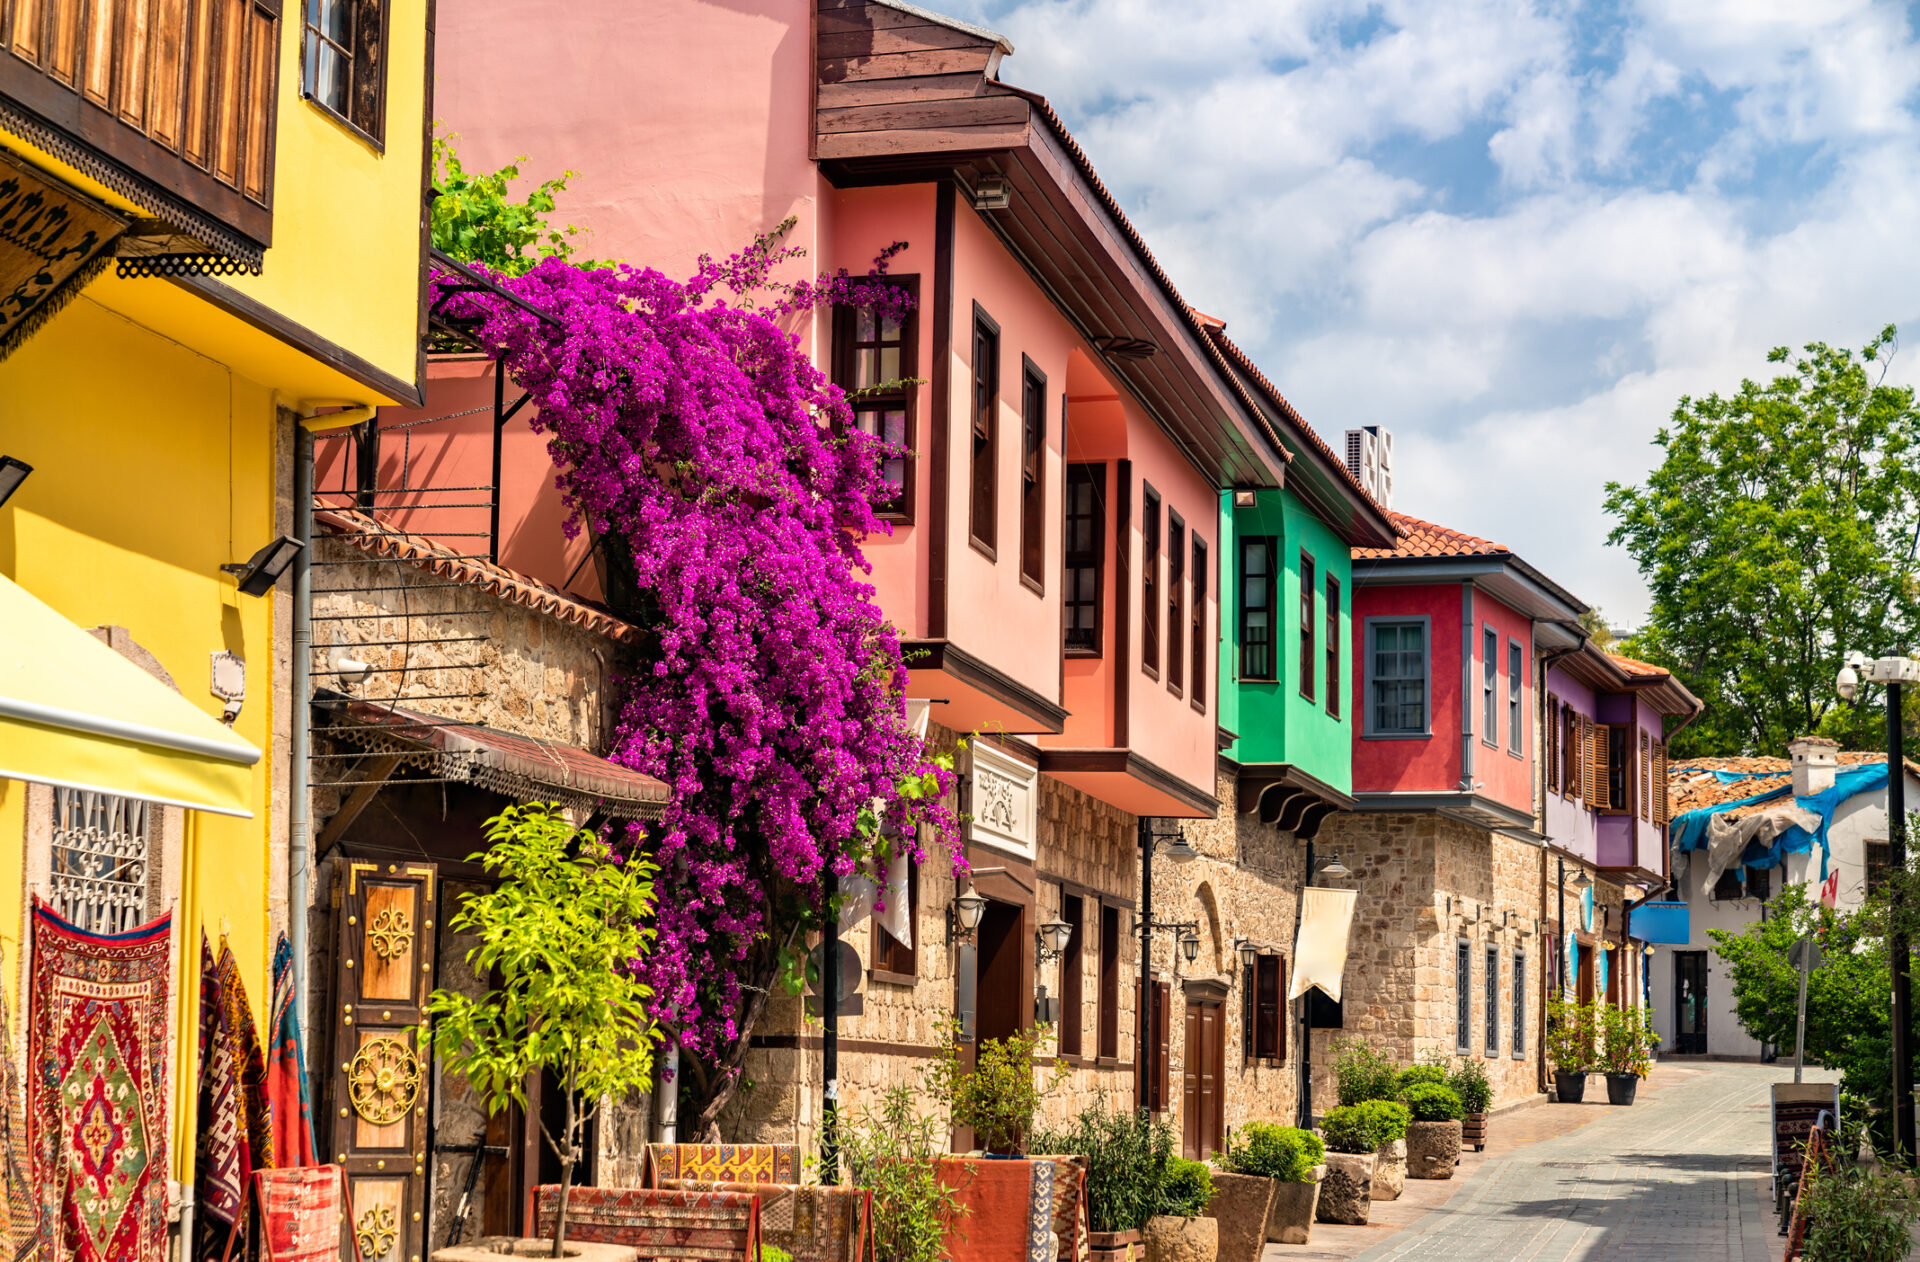 Antalya old town (Photo: iStockphoto)